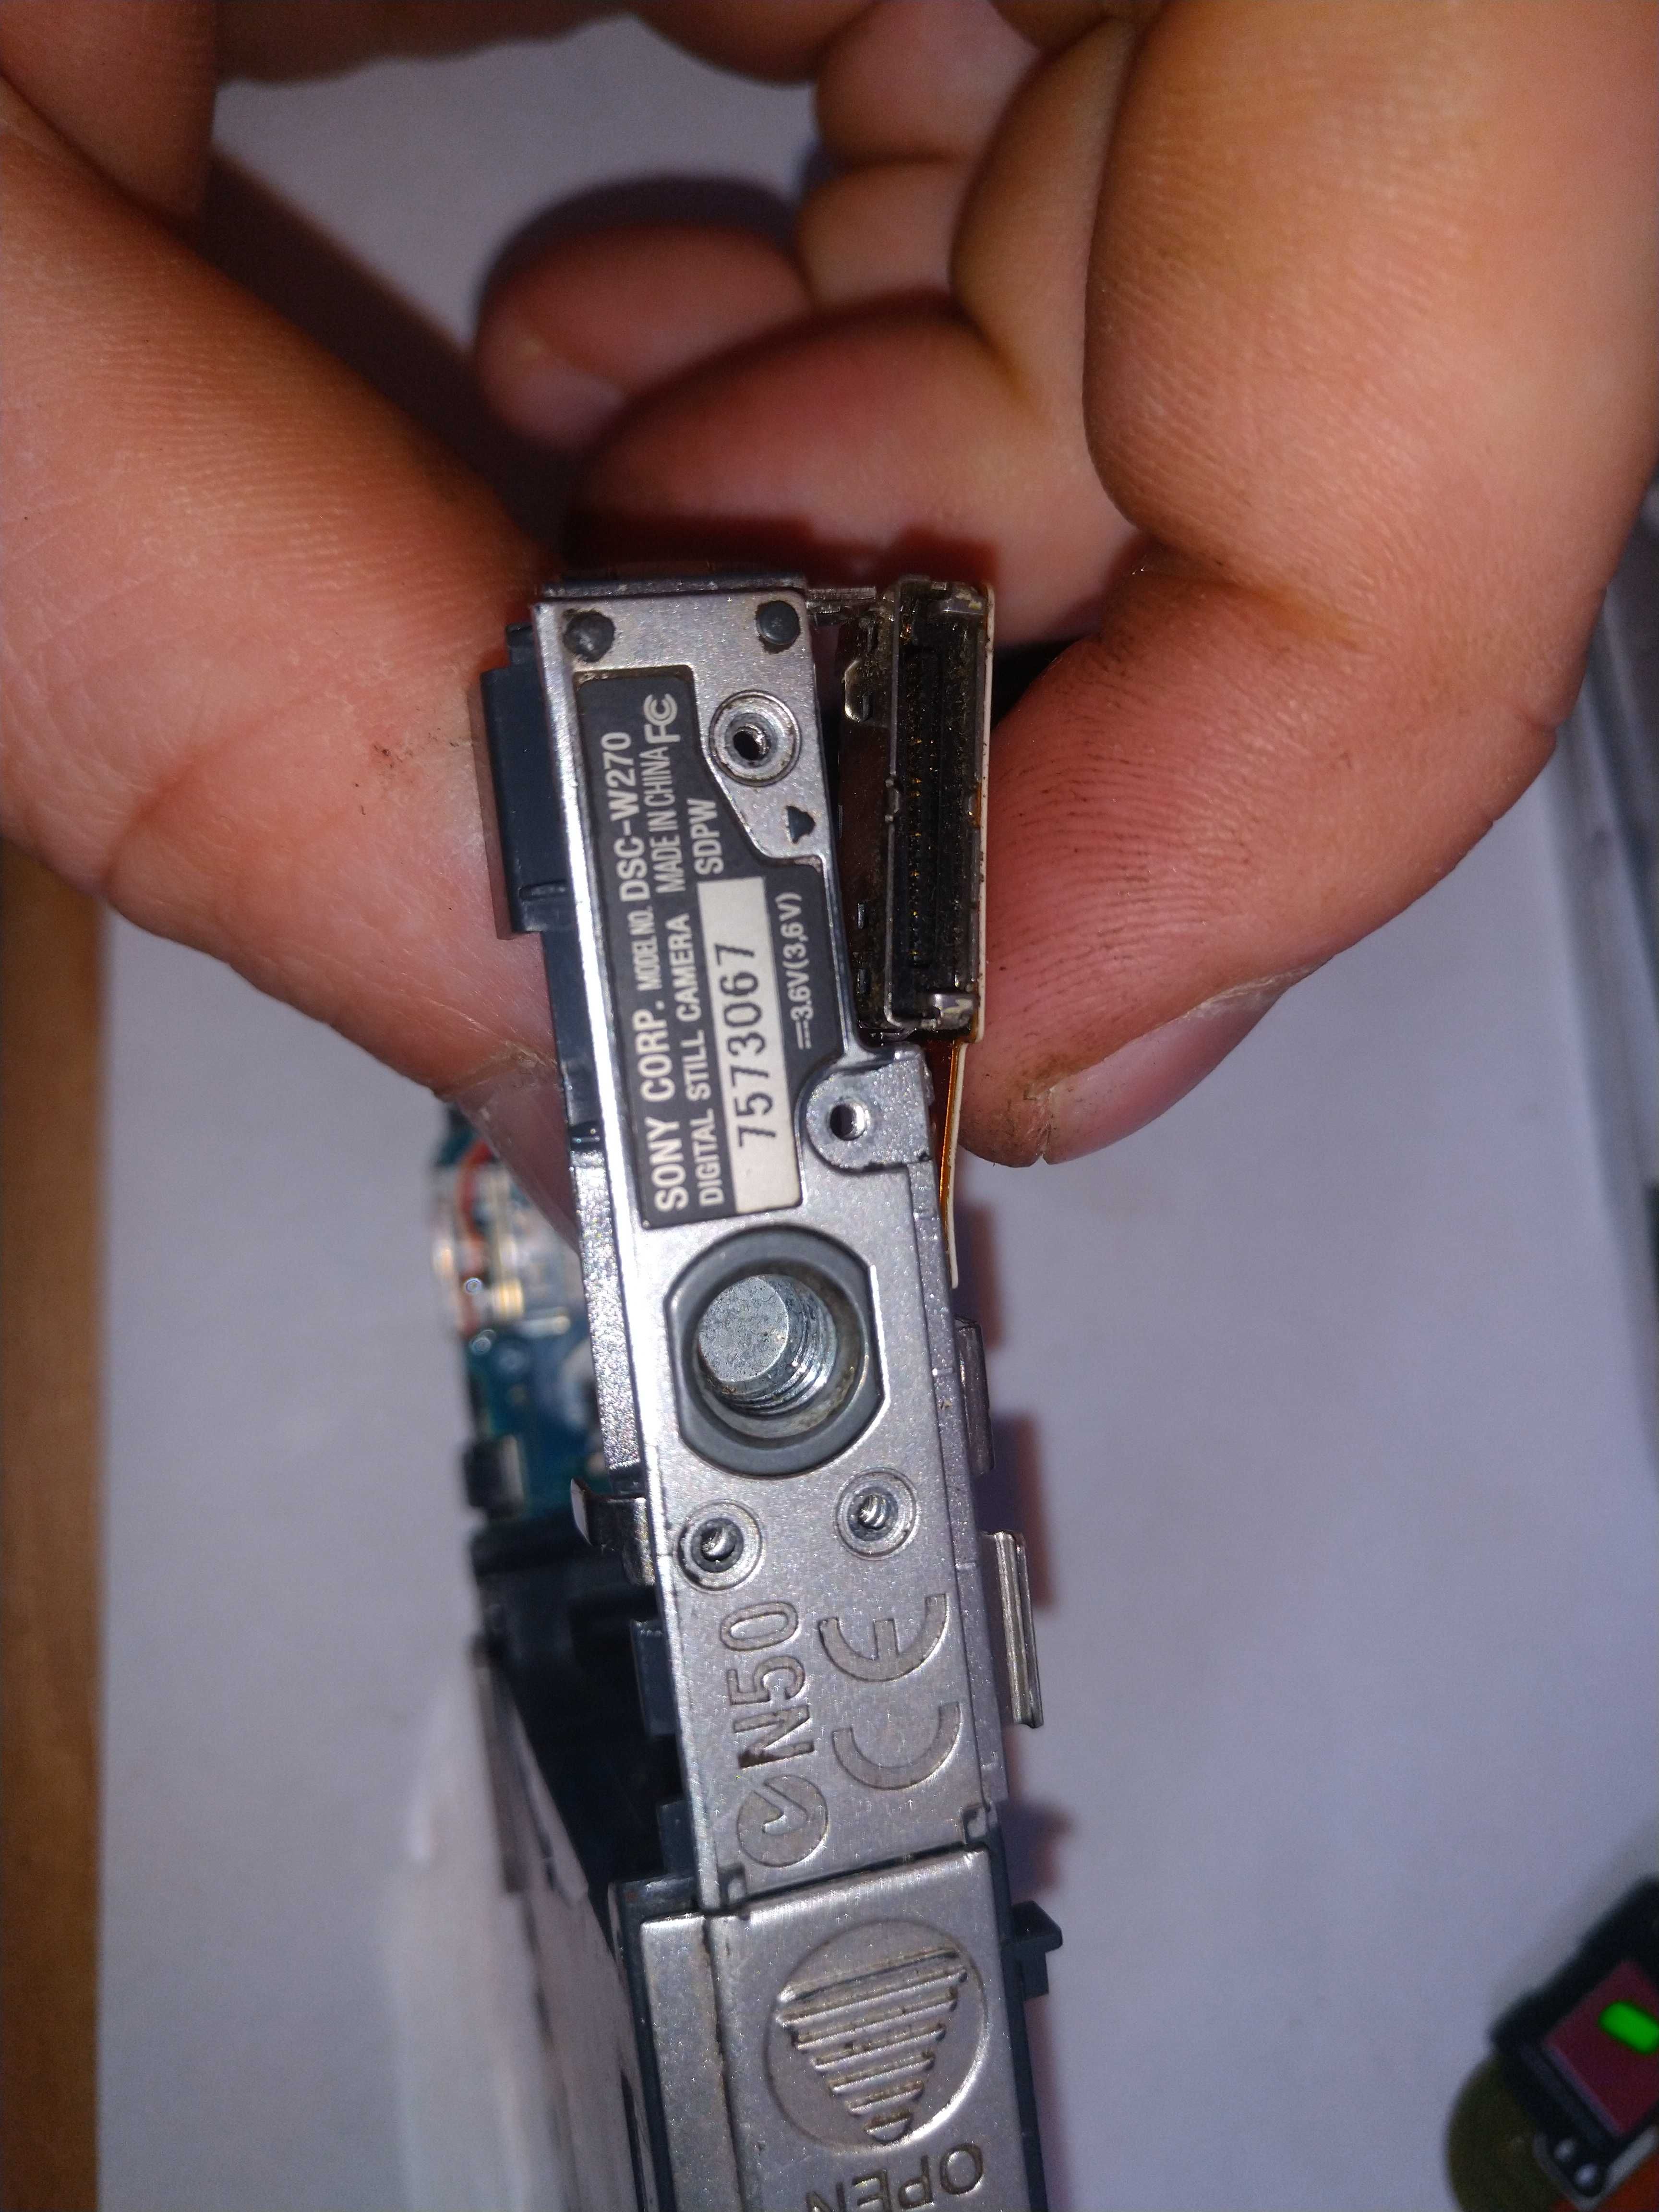 Aparat Sony DSC-W270 Wyświetlacz płyta główna obudowa